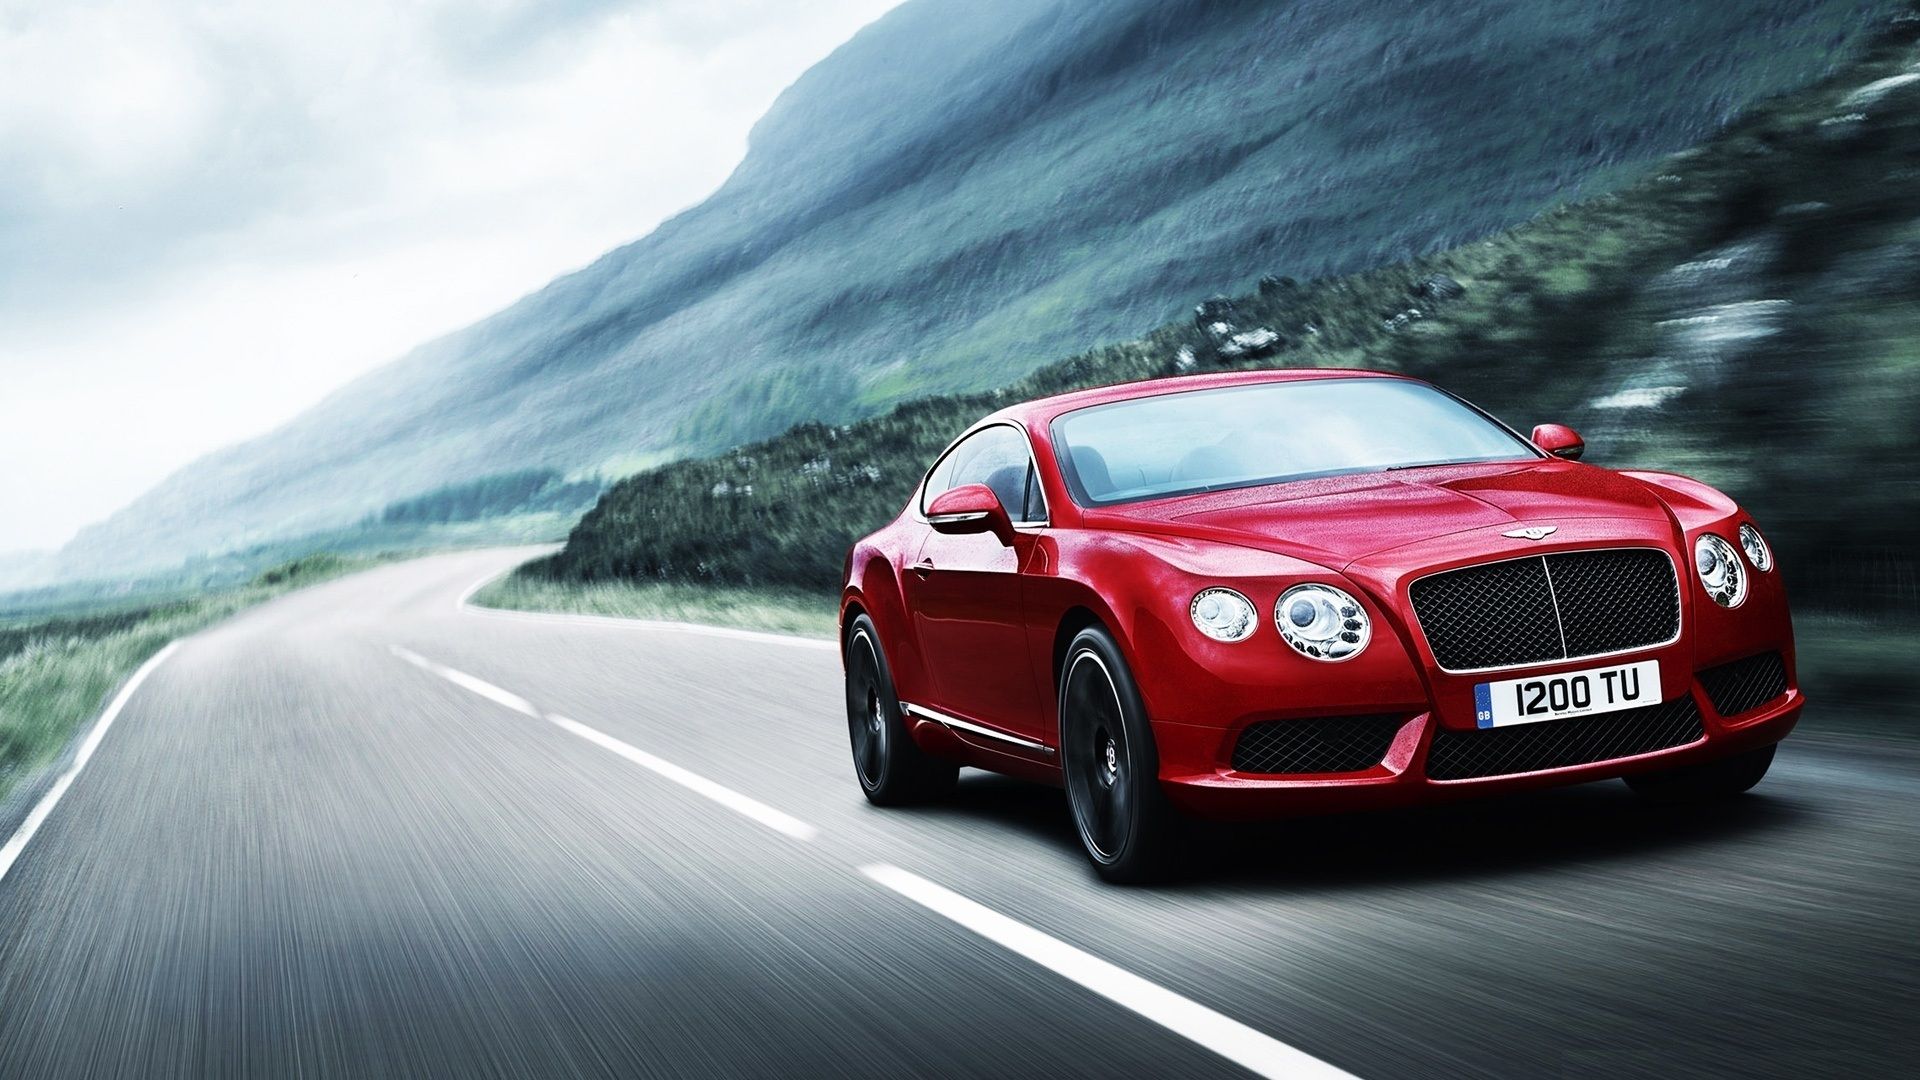 Hình nền desktop Bentley đỏ là cái gì đó đầy chất lượng, tạo nên sự độc đáo của không gian làm việc của bạn. Với các màu sắc rực rỡ, chi tiết tinh tế và độ phân giải cao, bạn sẽ cảm thấy khác biệt và độc đáo.